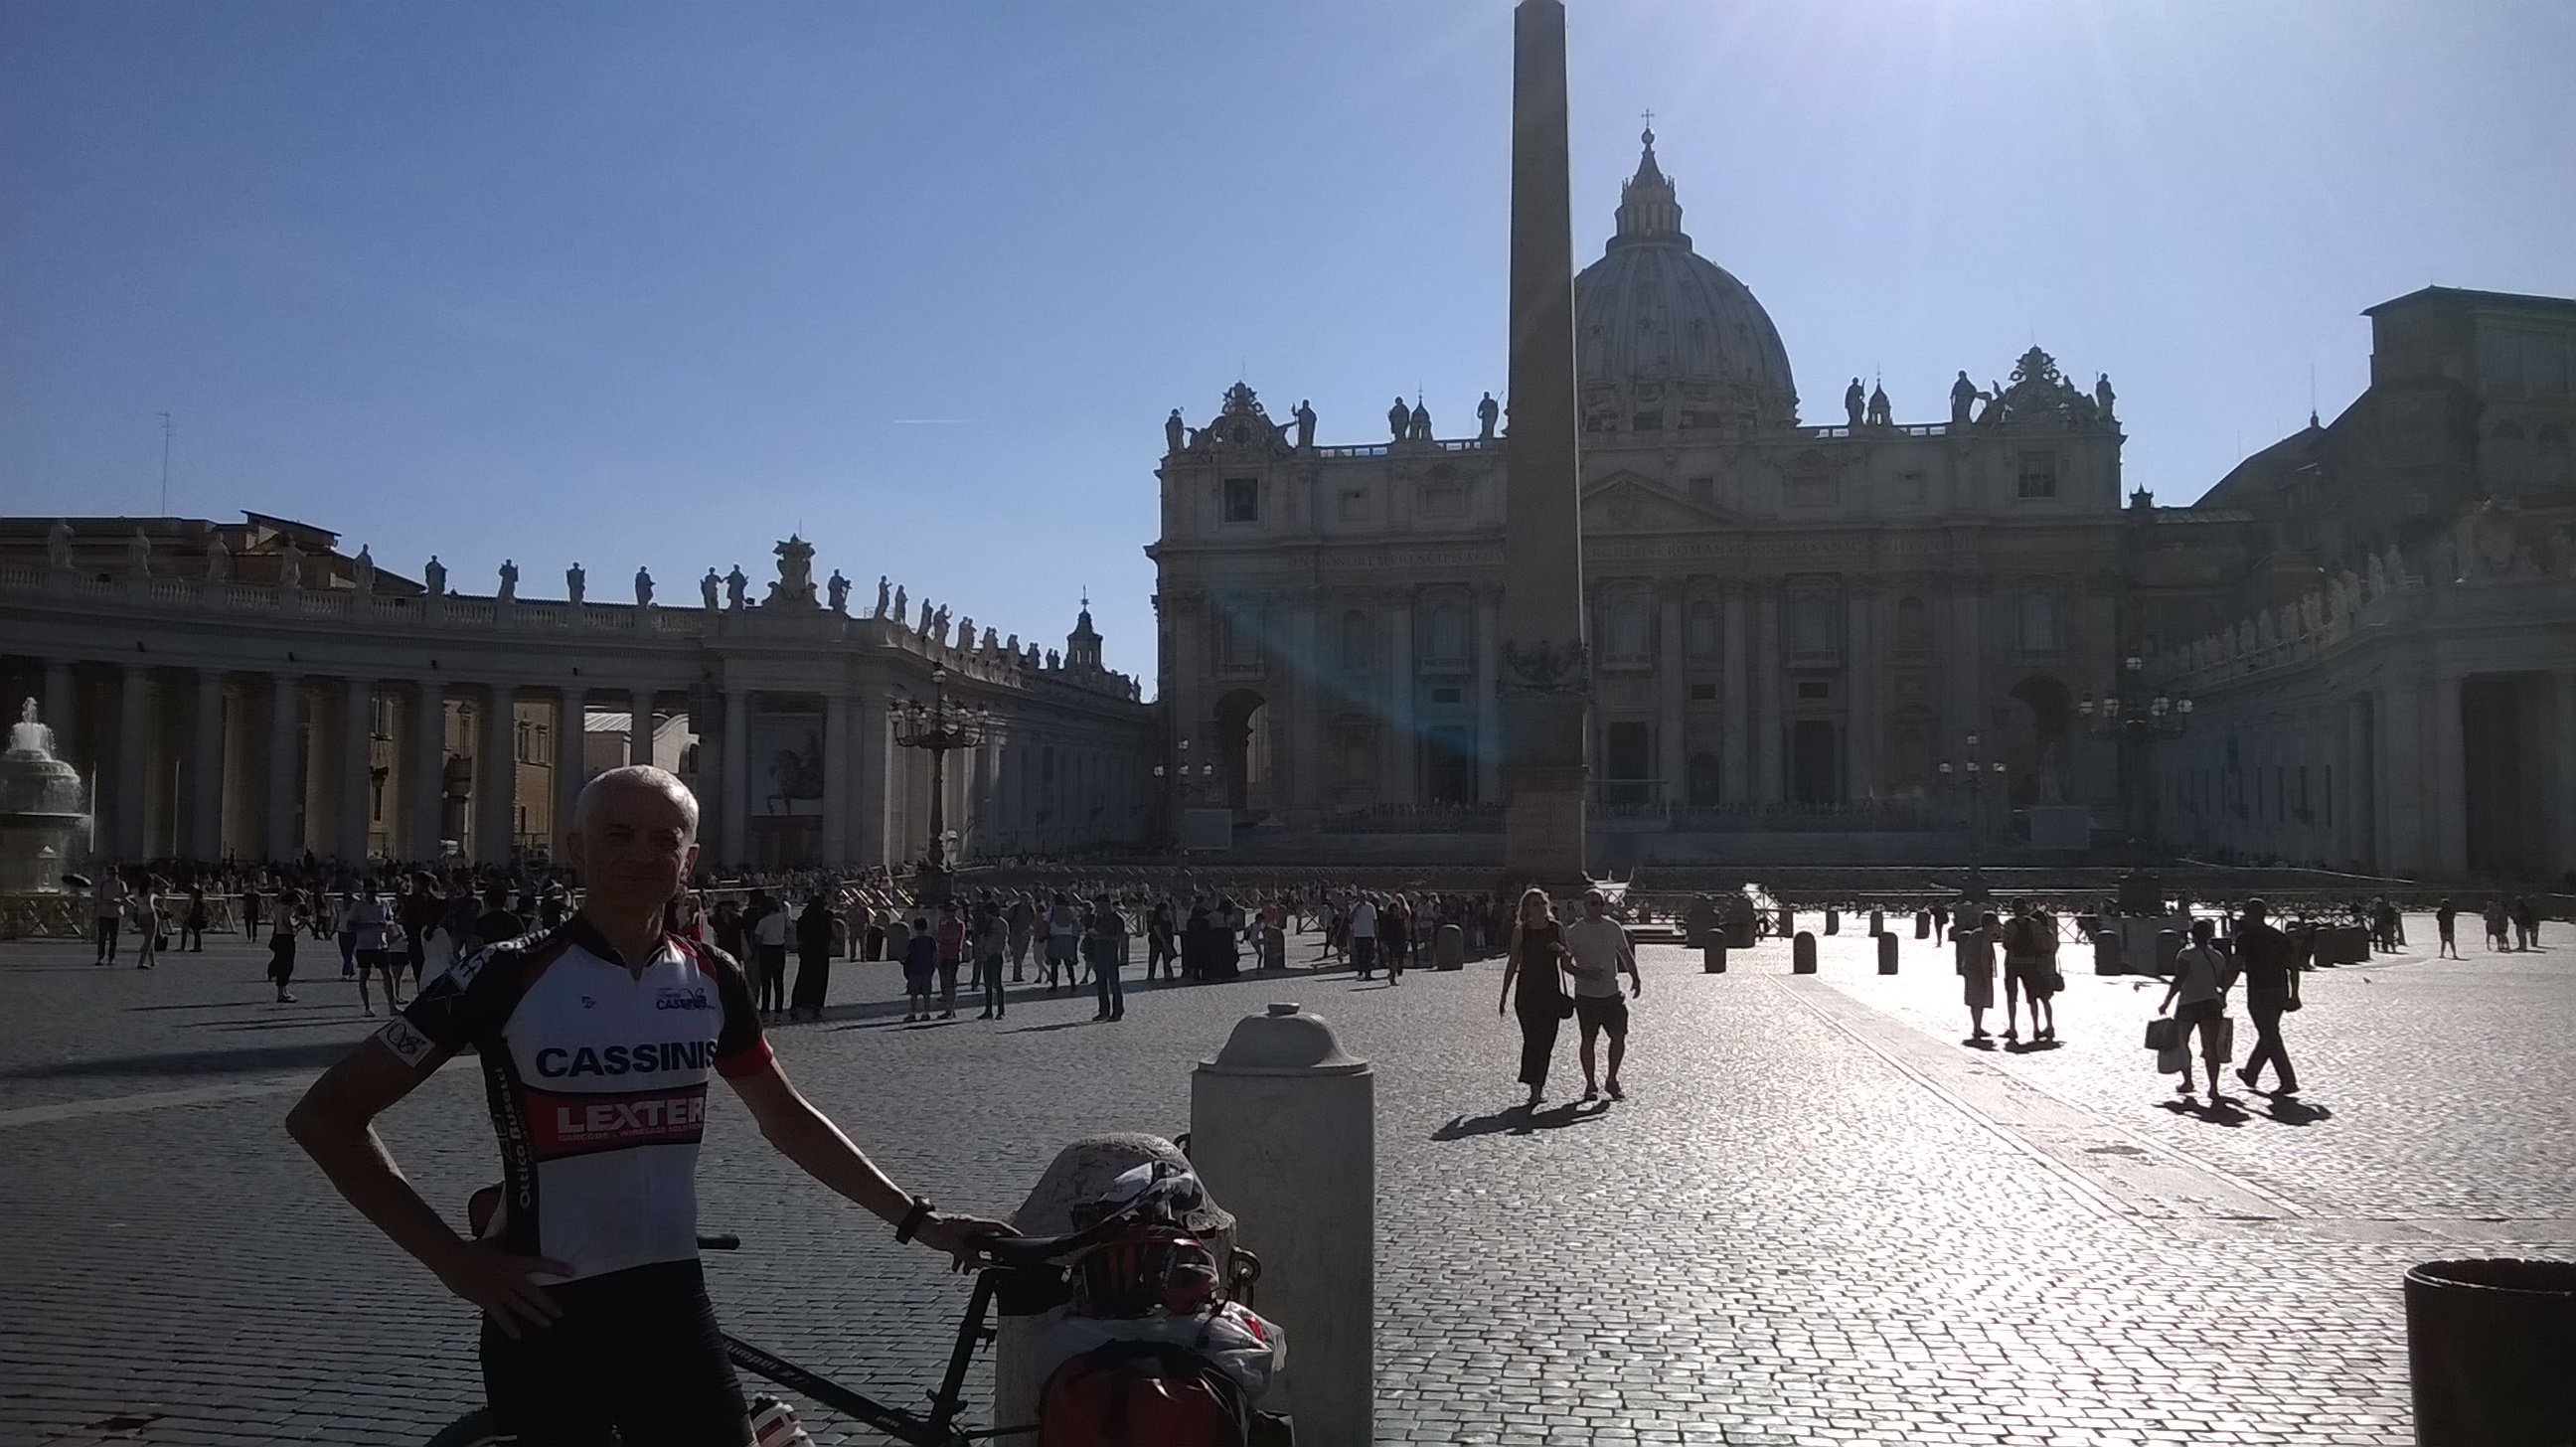 Arrivo in bici in piazza San Pietro dalla via Francigena